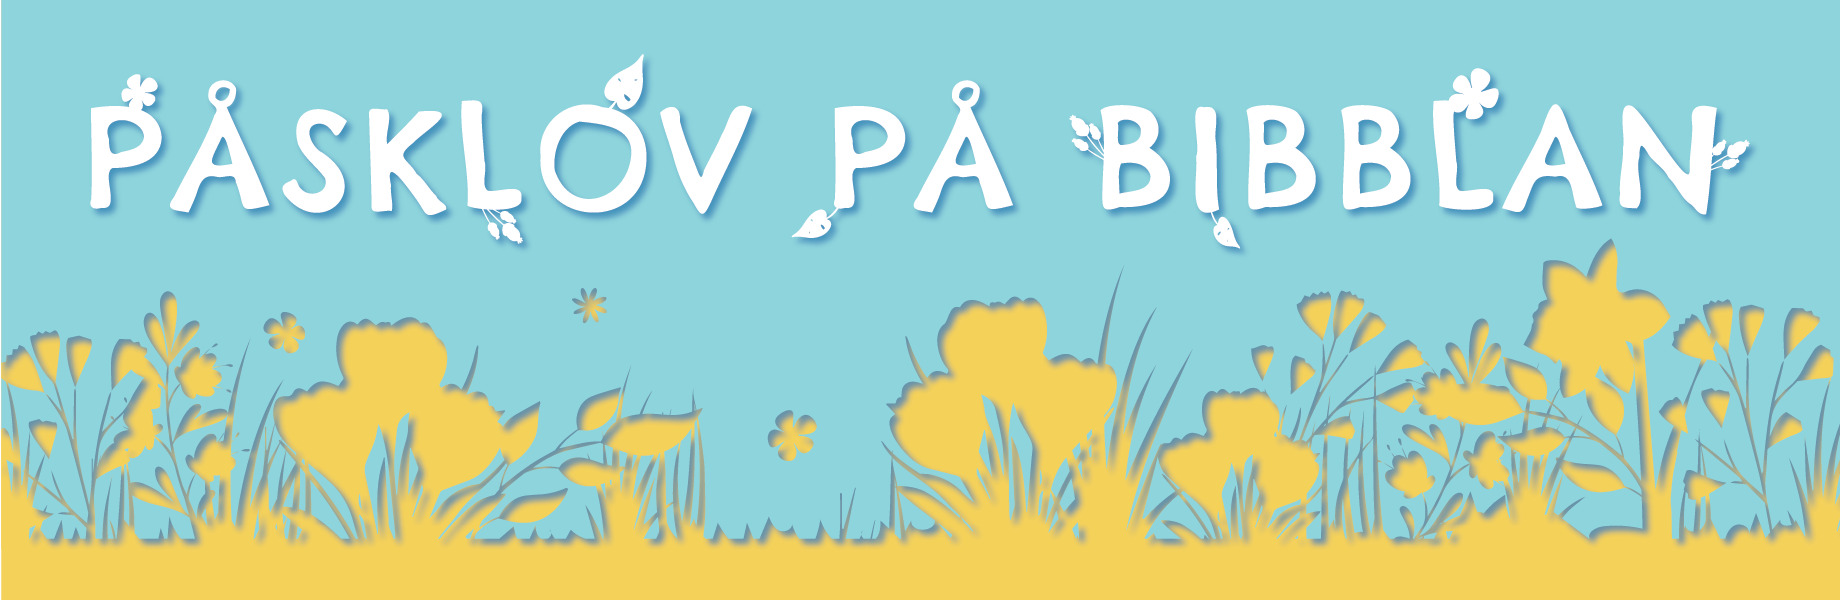 Texten PÅSKLOV PÅ BIBBLAN i vitt mot en blå bakgrund och med gula blommor under.